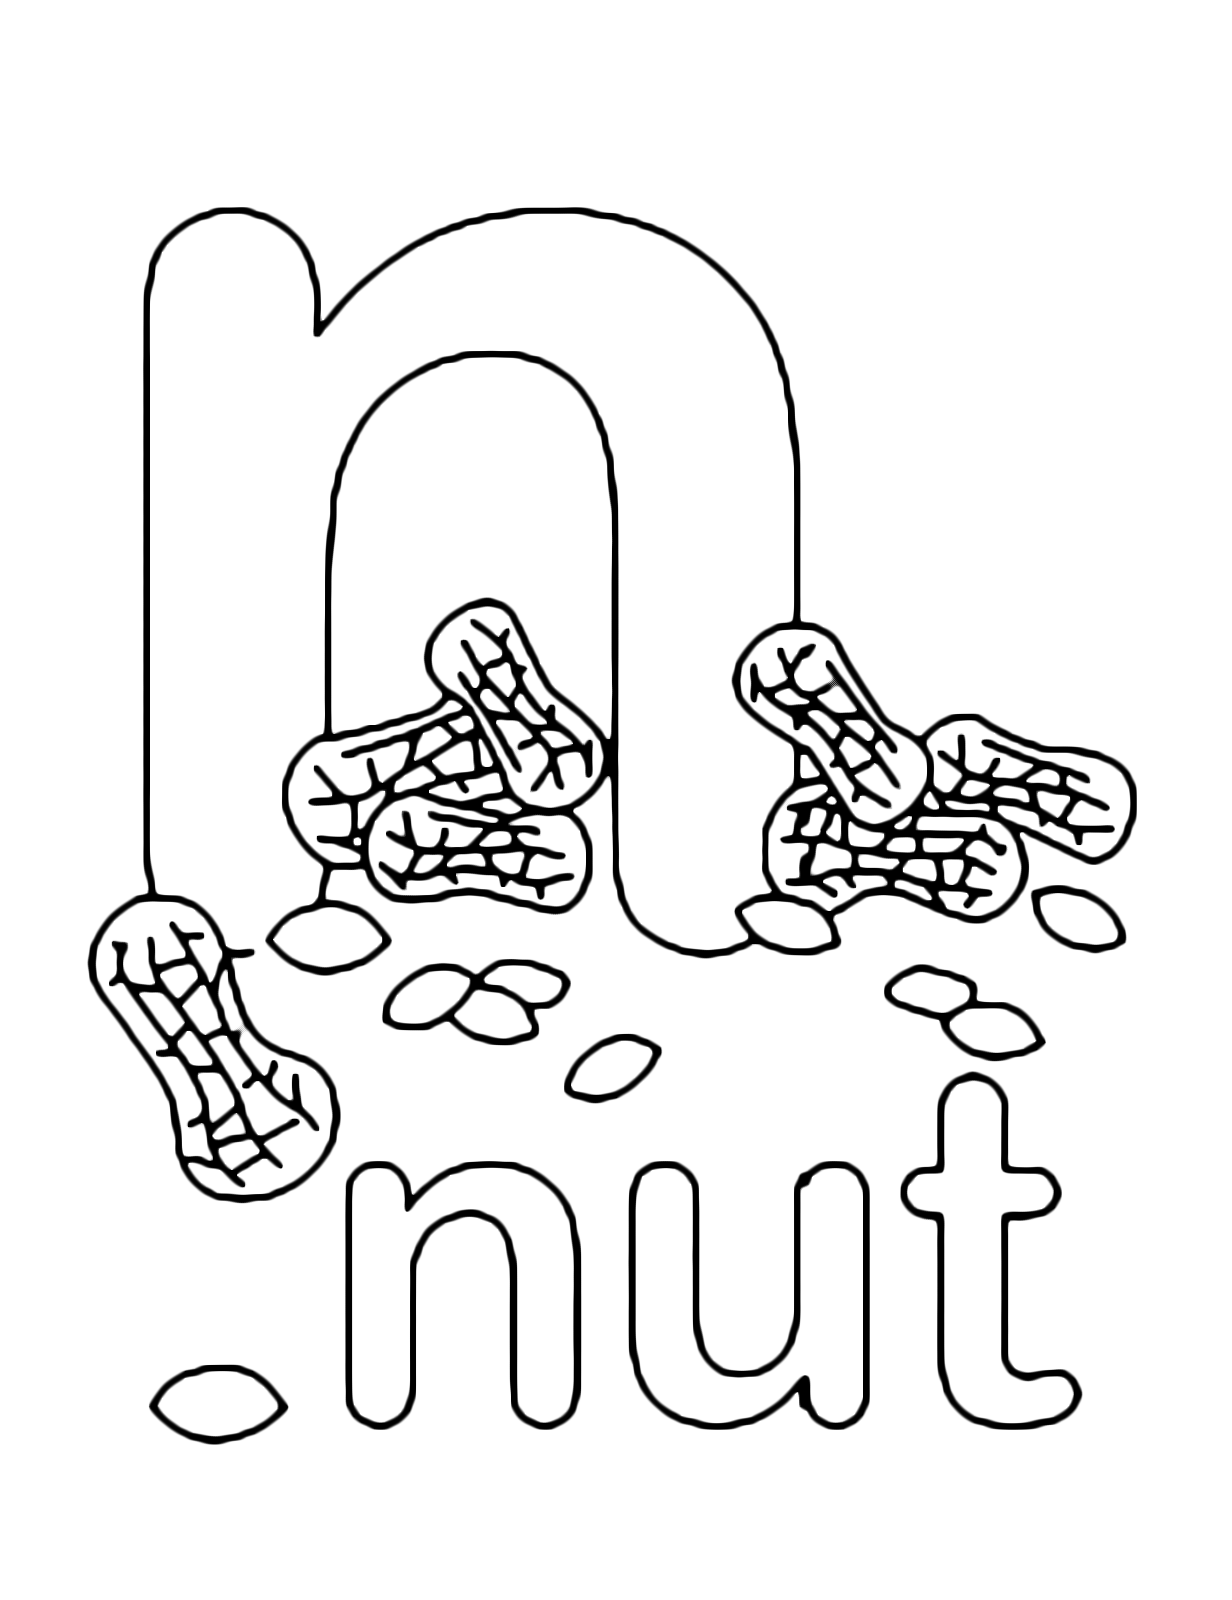 Lettere e numeri - Lettera n in stampato minuscolo di nut (noce o nocciol) in Inglese